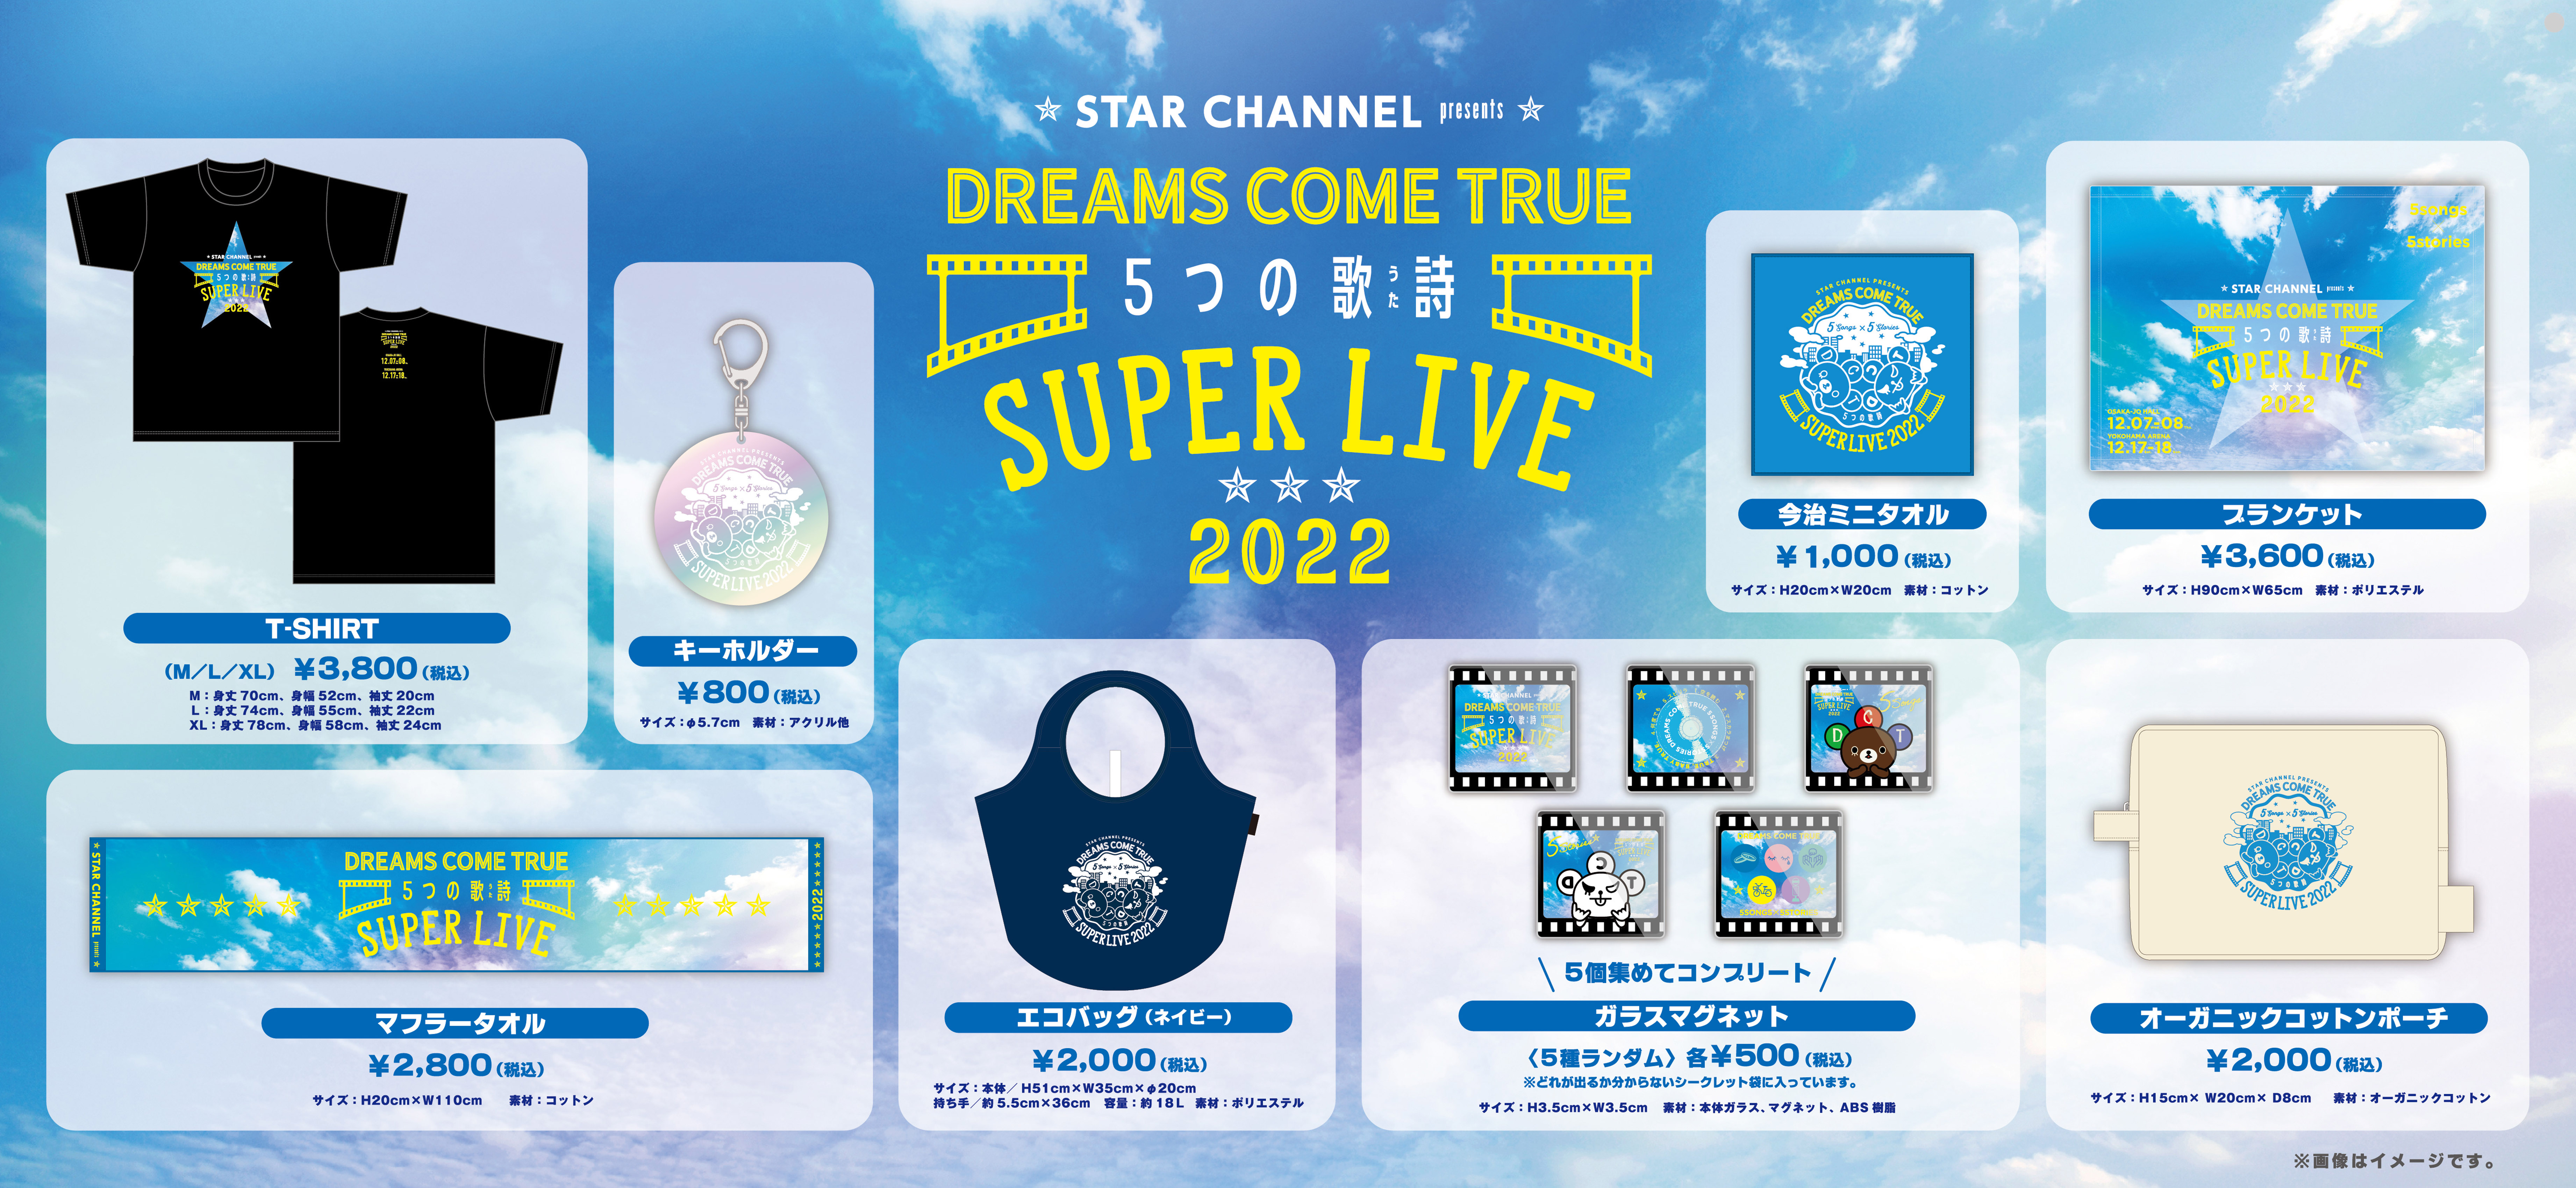 STAR CHANNEL presents DREAMS COME TRUE 5つの歌詩(うた) SUPER LIVE 